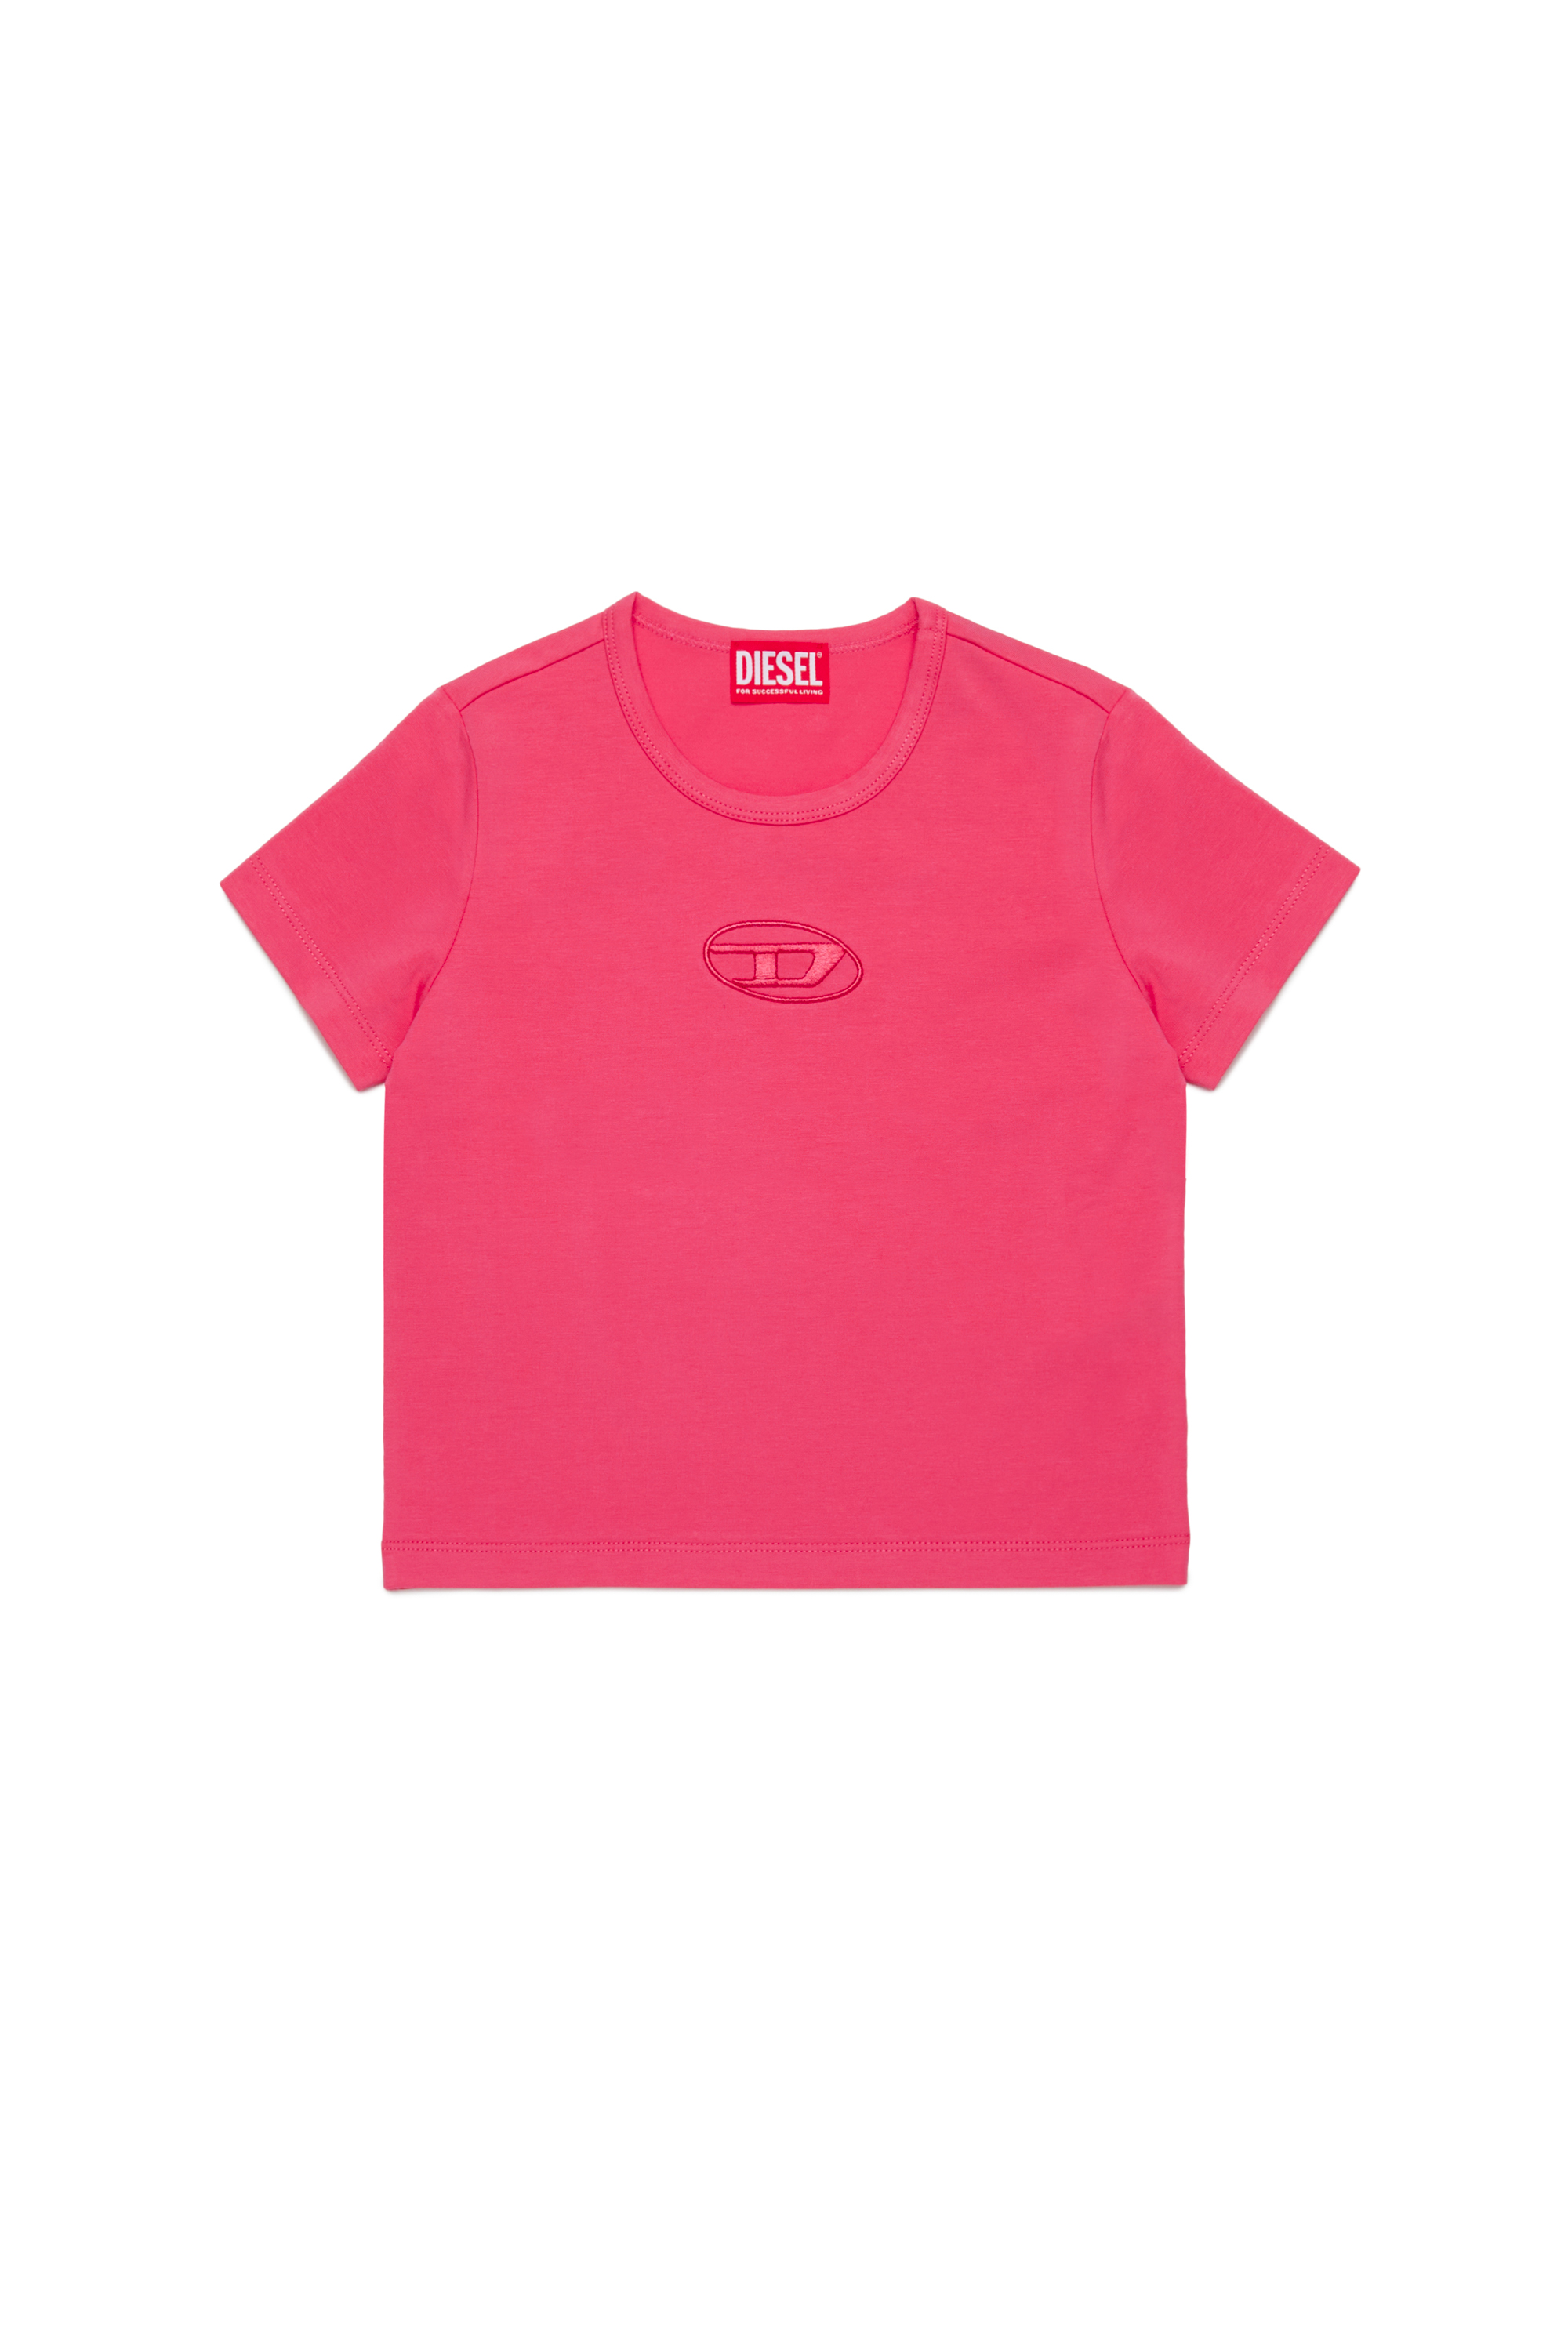 Diesel - TANGIEX, Damen T-Shirt mit farblich abgestimmter Oval D-Stickerei in Rosa - Image 1